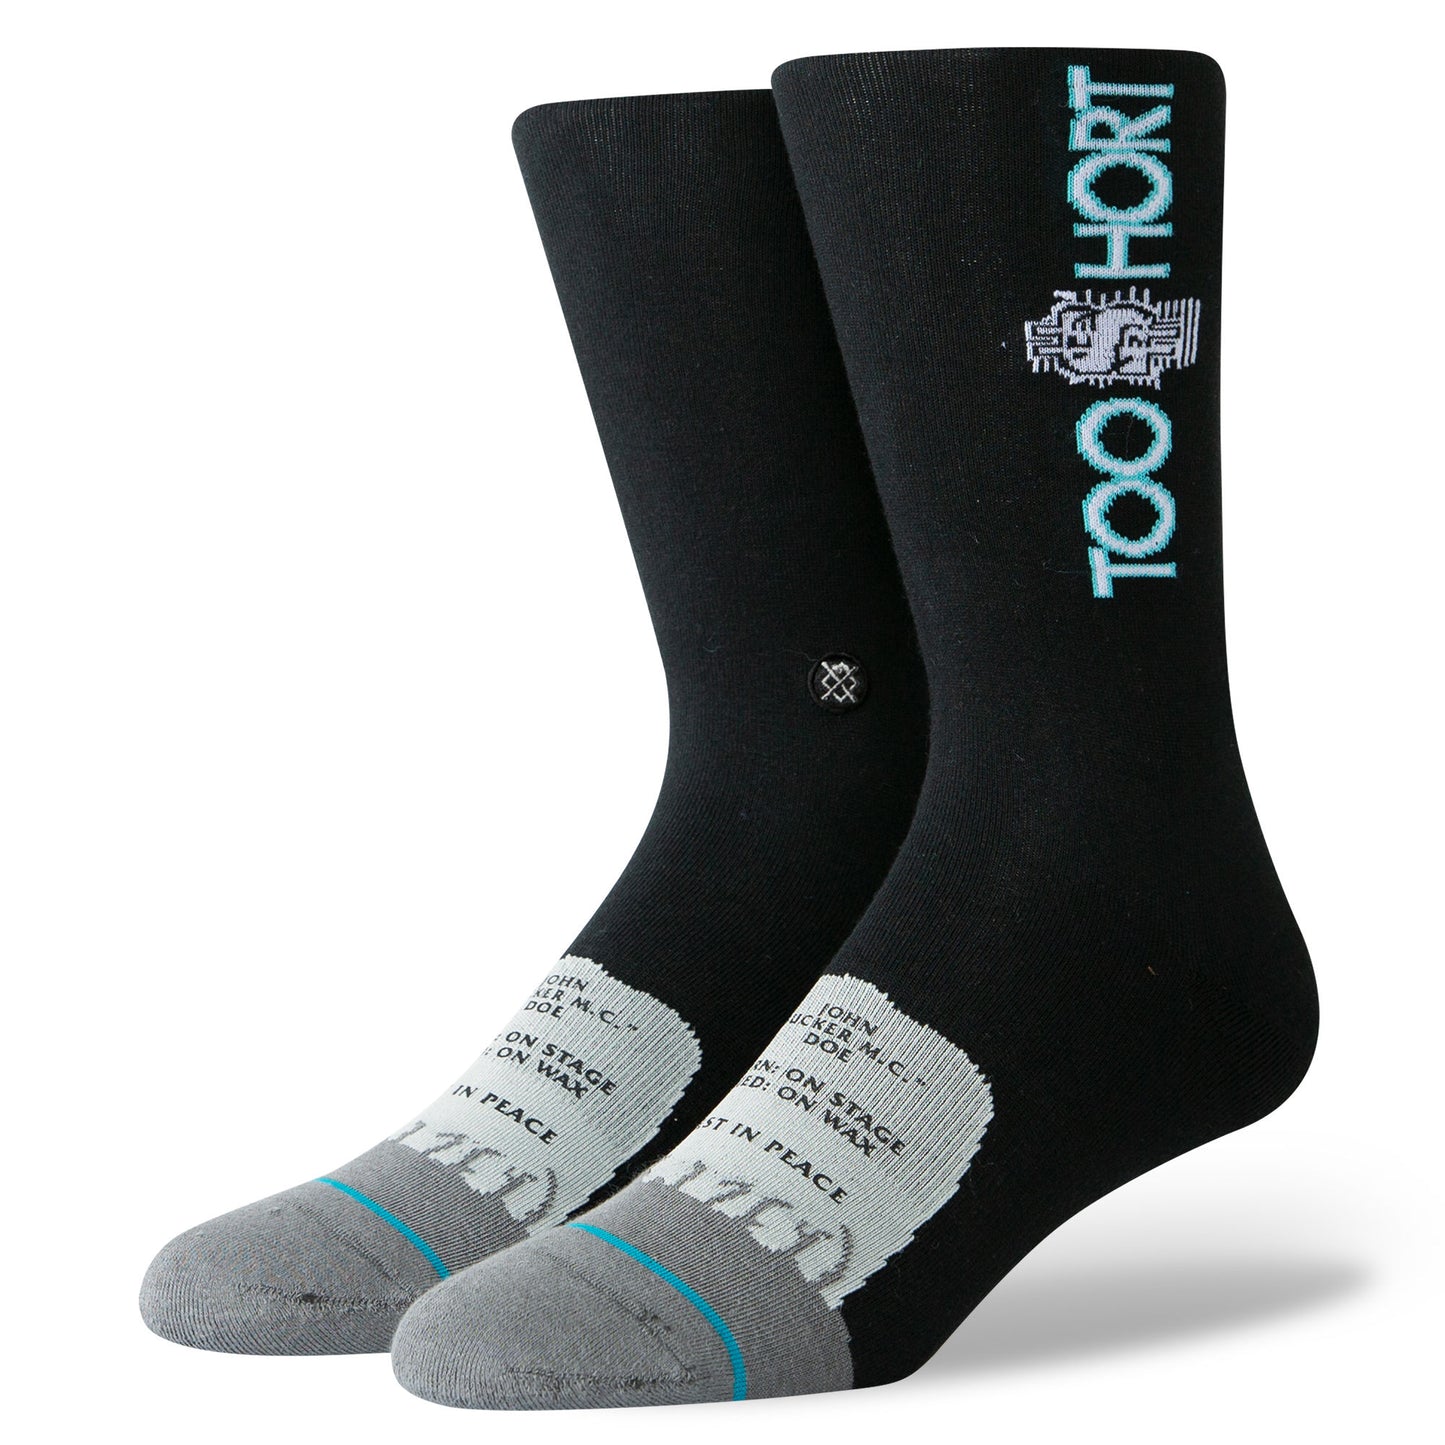 Stance x Too Short - Too $hort Men's Socks, Black